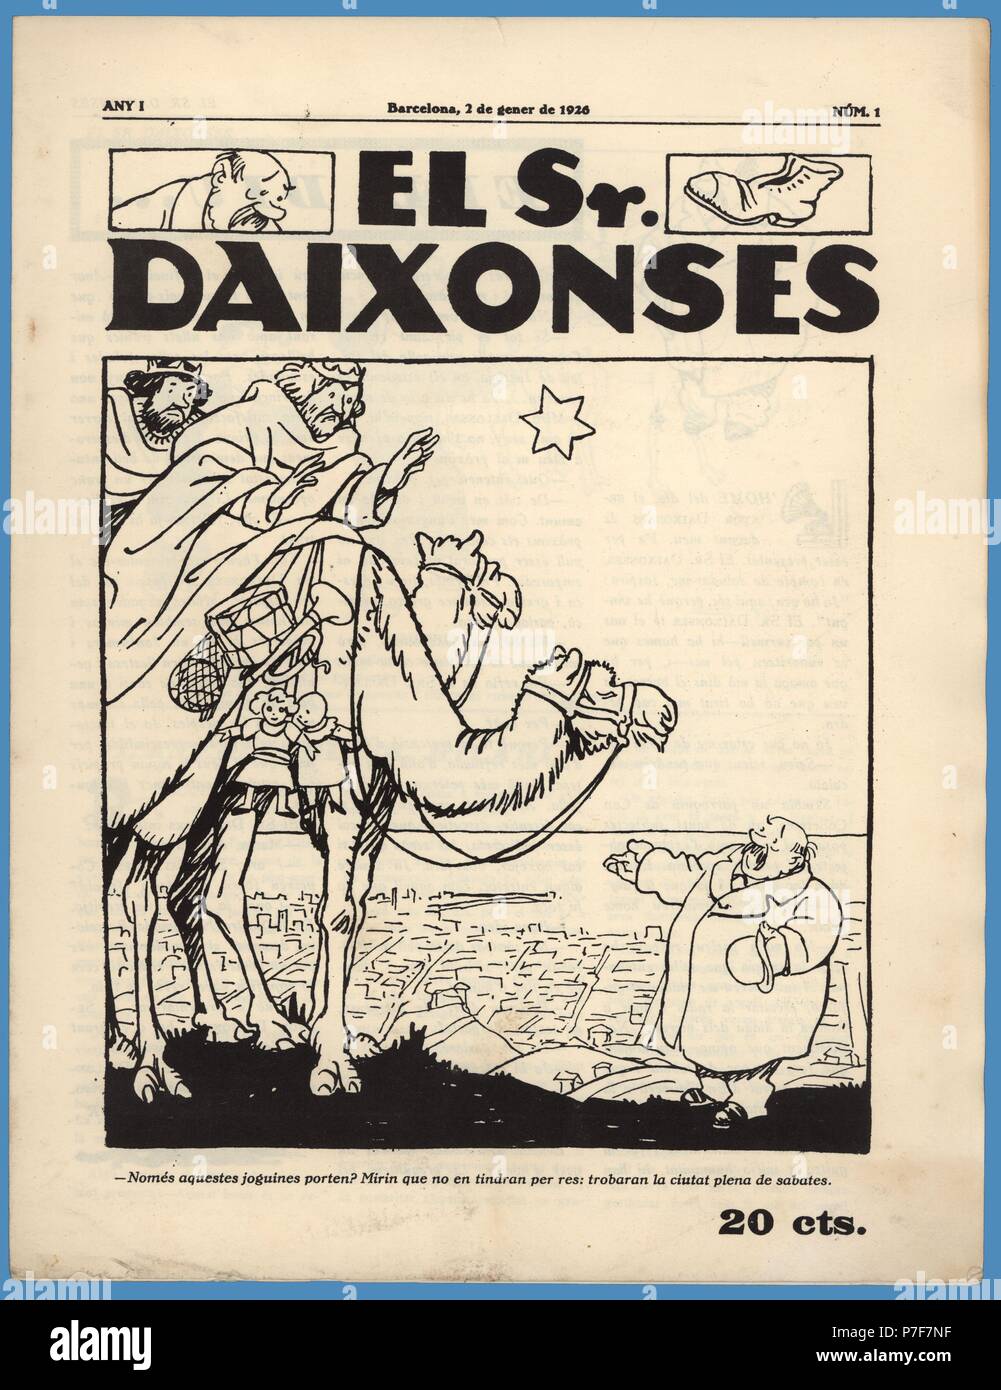 Portada de la revista humorística El Senyor Daixonses, número uno, editada en Barcelona, enero de 1926. Stock Photo